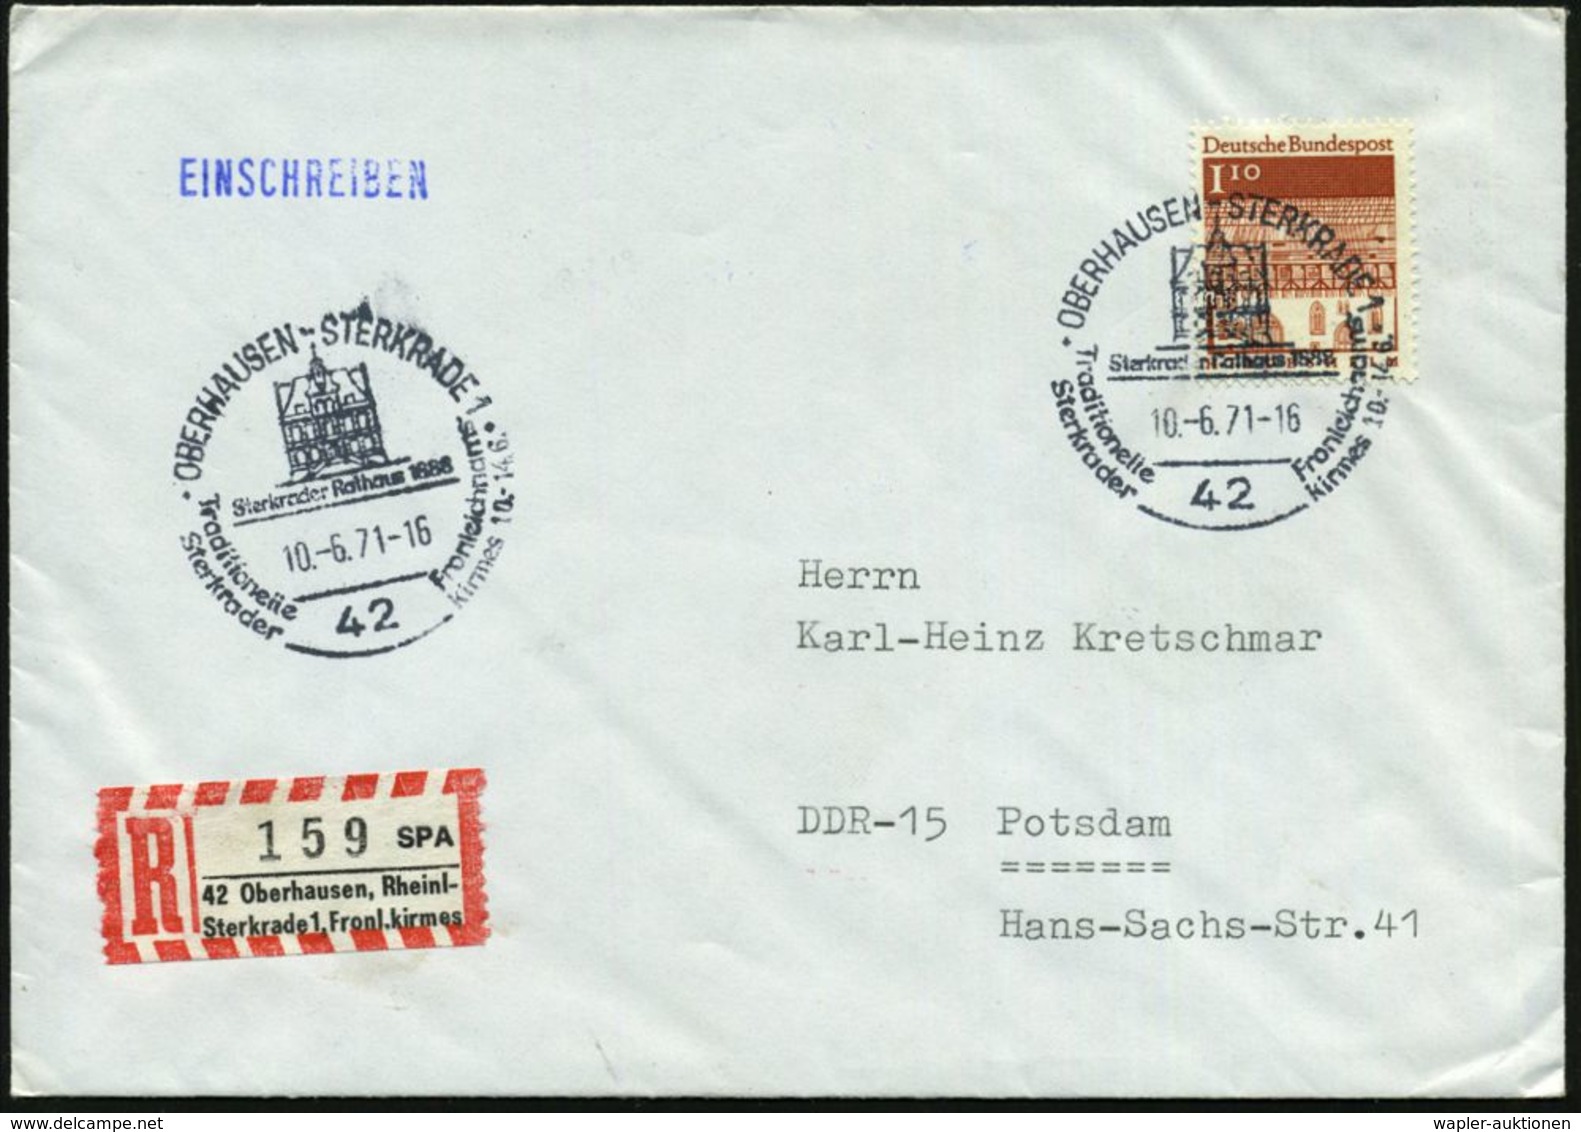 WALLFAHRT / PILGER : 42 OBERHAUSEN-STERKRADE 1/ Fronleichnams-/ Kirmes 1971 (10.6.) SSt + Sonder-RZ: SPA/42 Oberhausen,  - Christianity